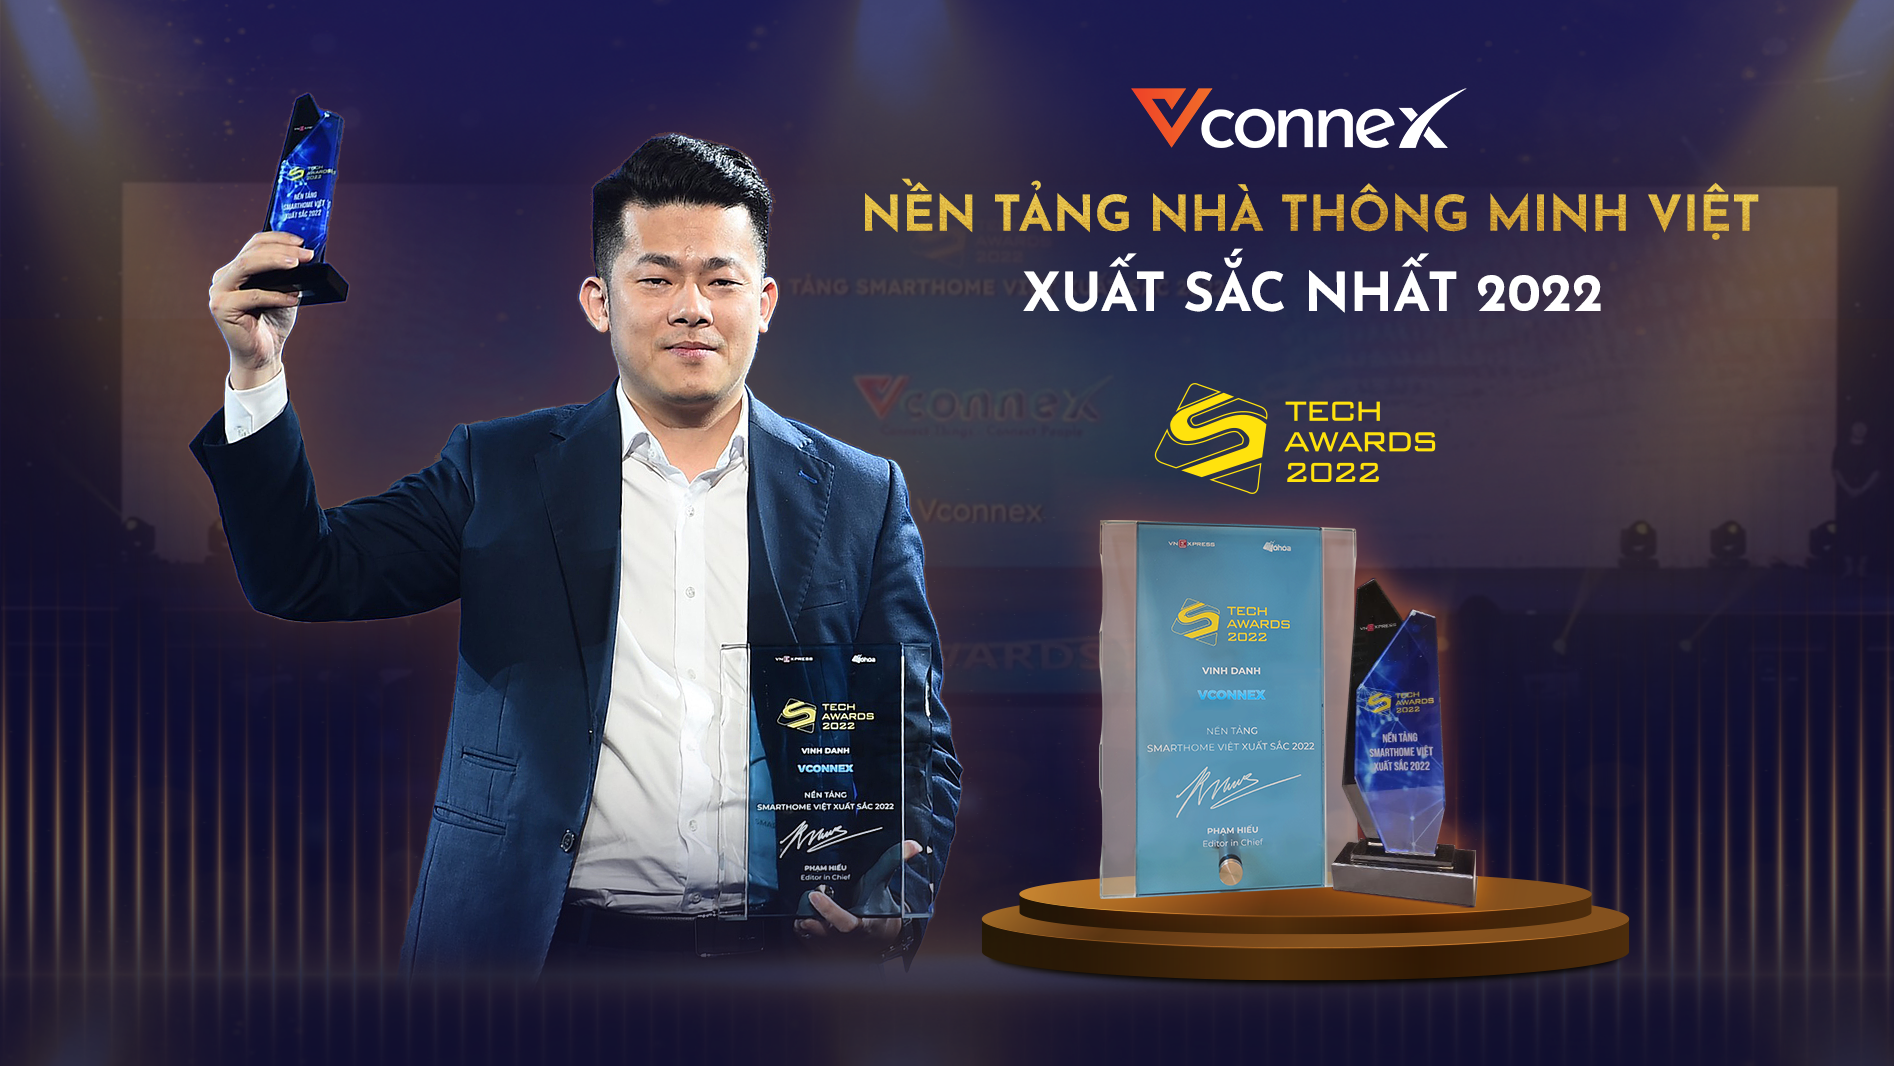 Vconnex đạt giải cao nhất Tech Awards 2022, vượt nhiều đối thủ smarthome